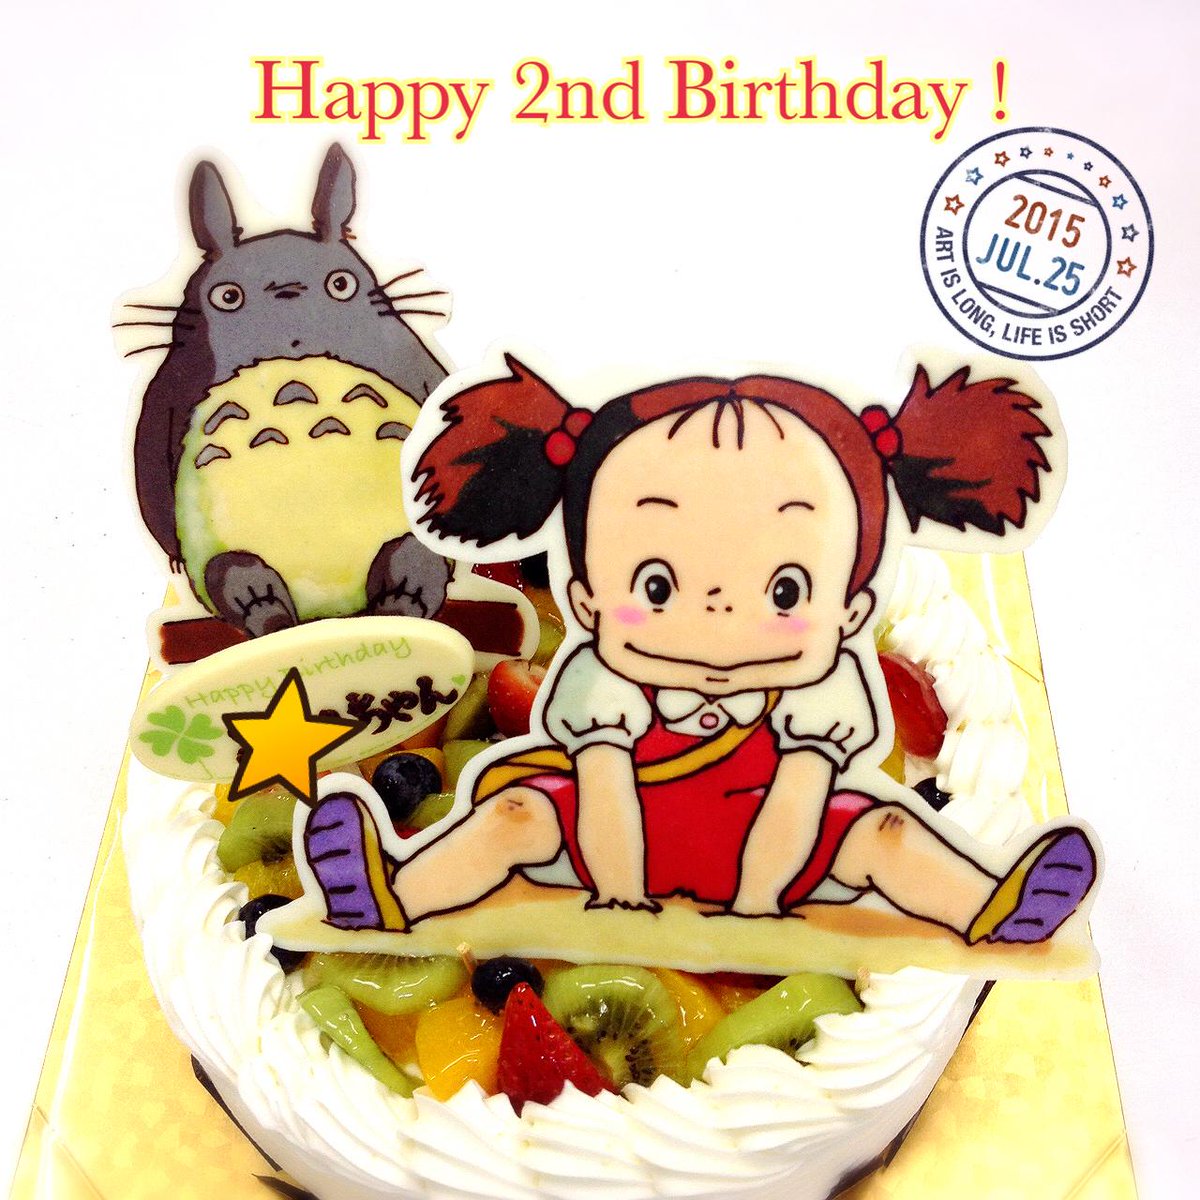 キャラデコ職人 トトロとめいちゃんのイラストケーキです 2歳のお誕生日おめでとうございます 楽しい1年になりますように Http T Co Ce186ujn9c Http T Co Gfs6r6inri Twitter